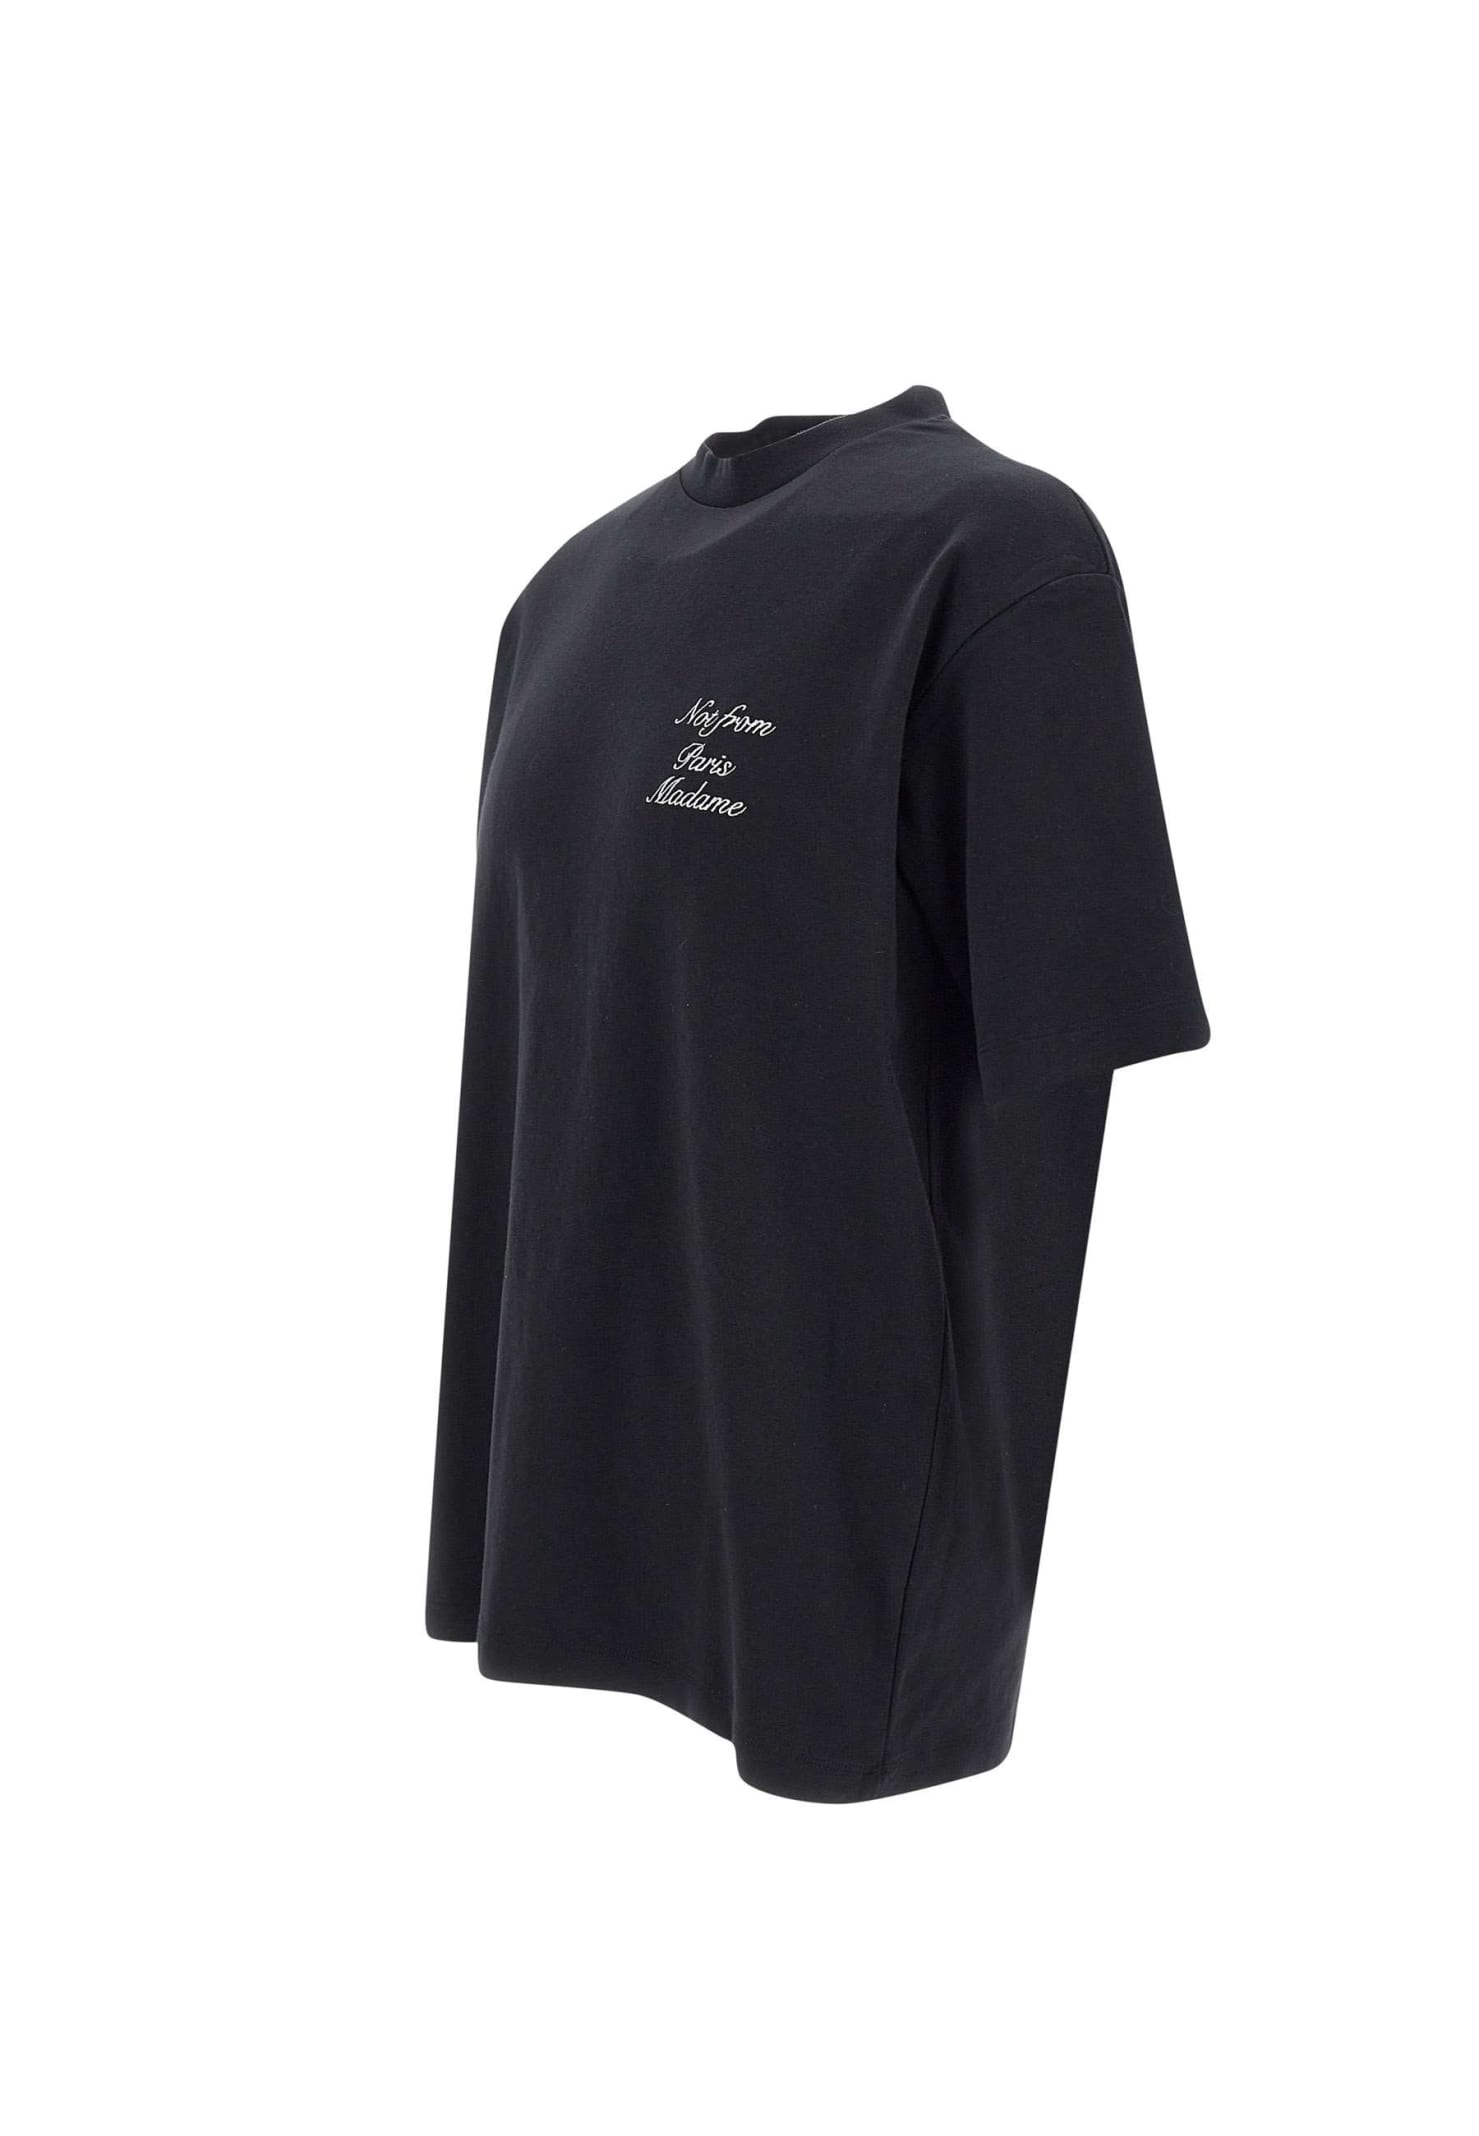 Shop Drôle De Monsieur Le Cursive Slogan T-shirt Cotton T-shirt In Black